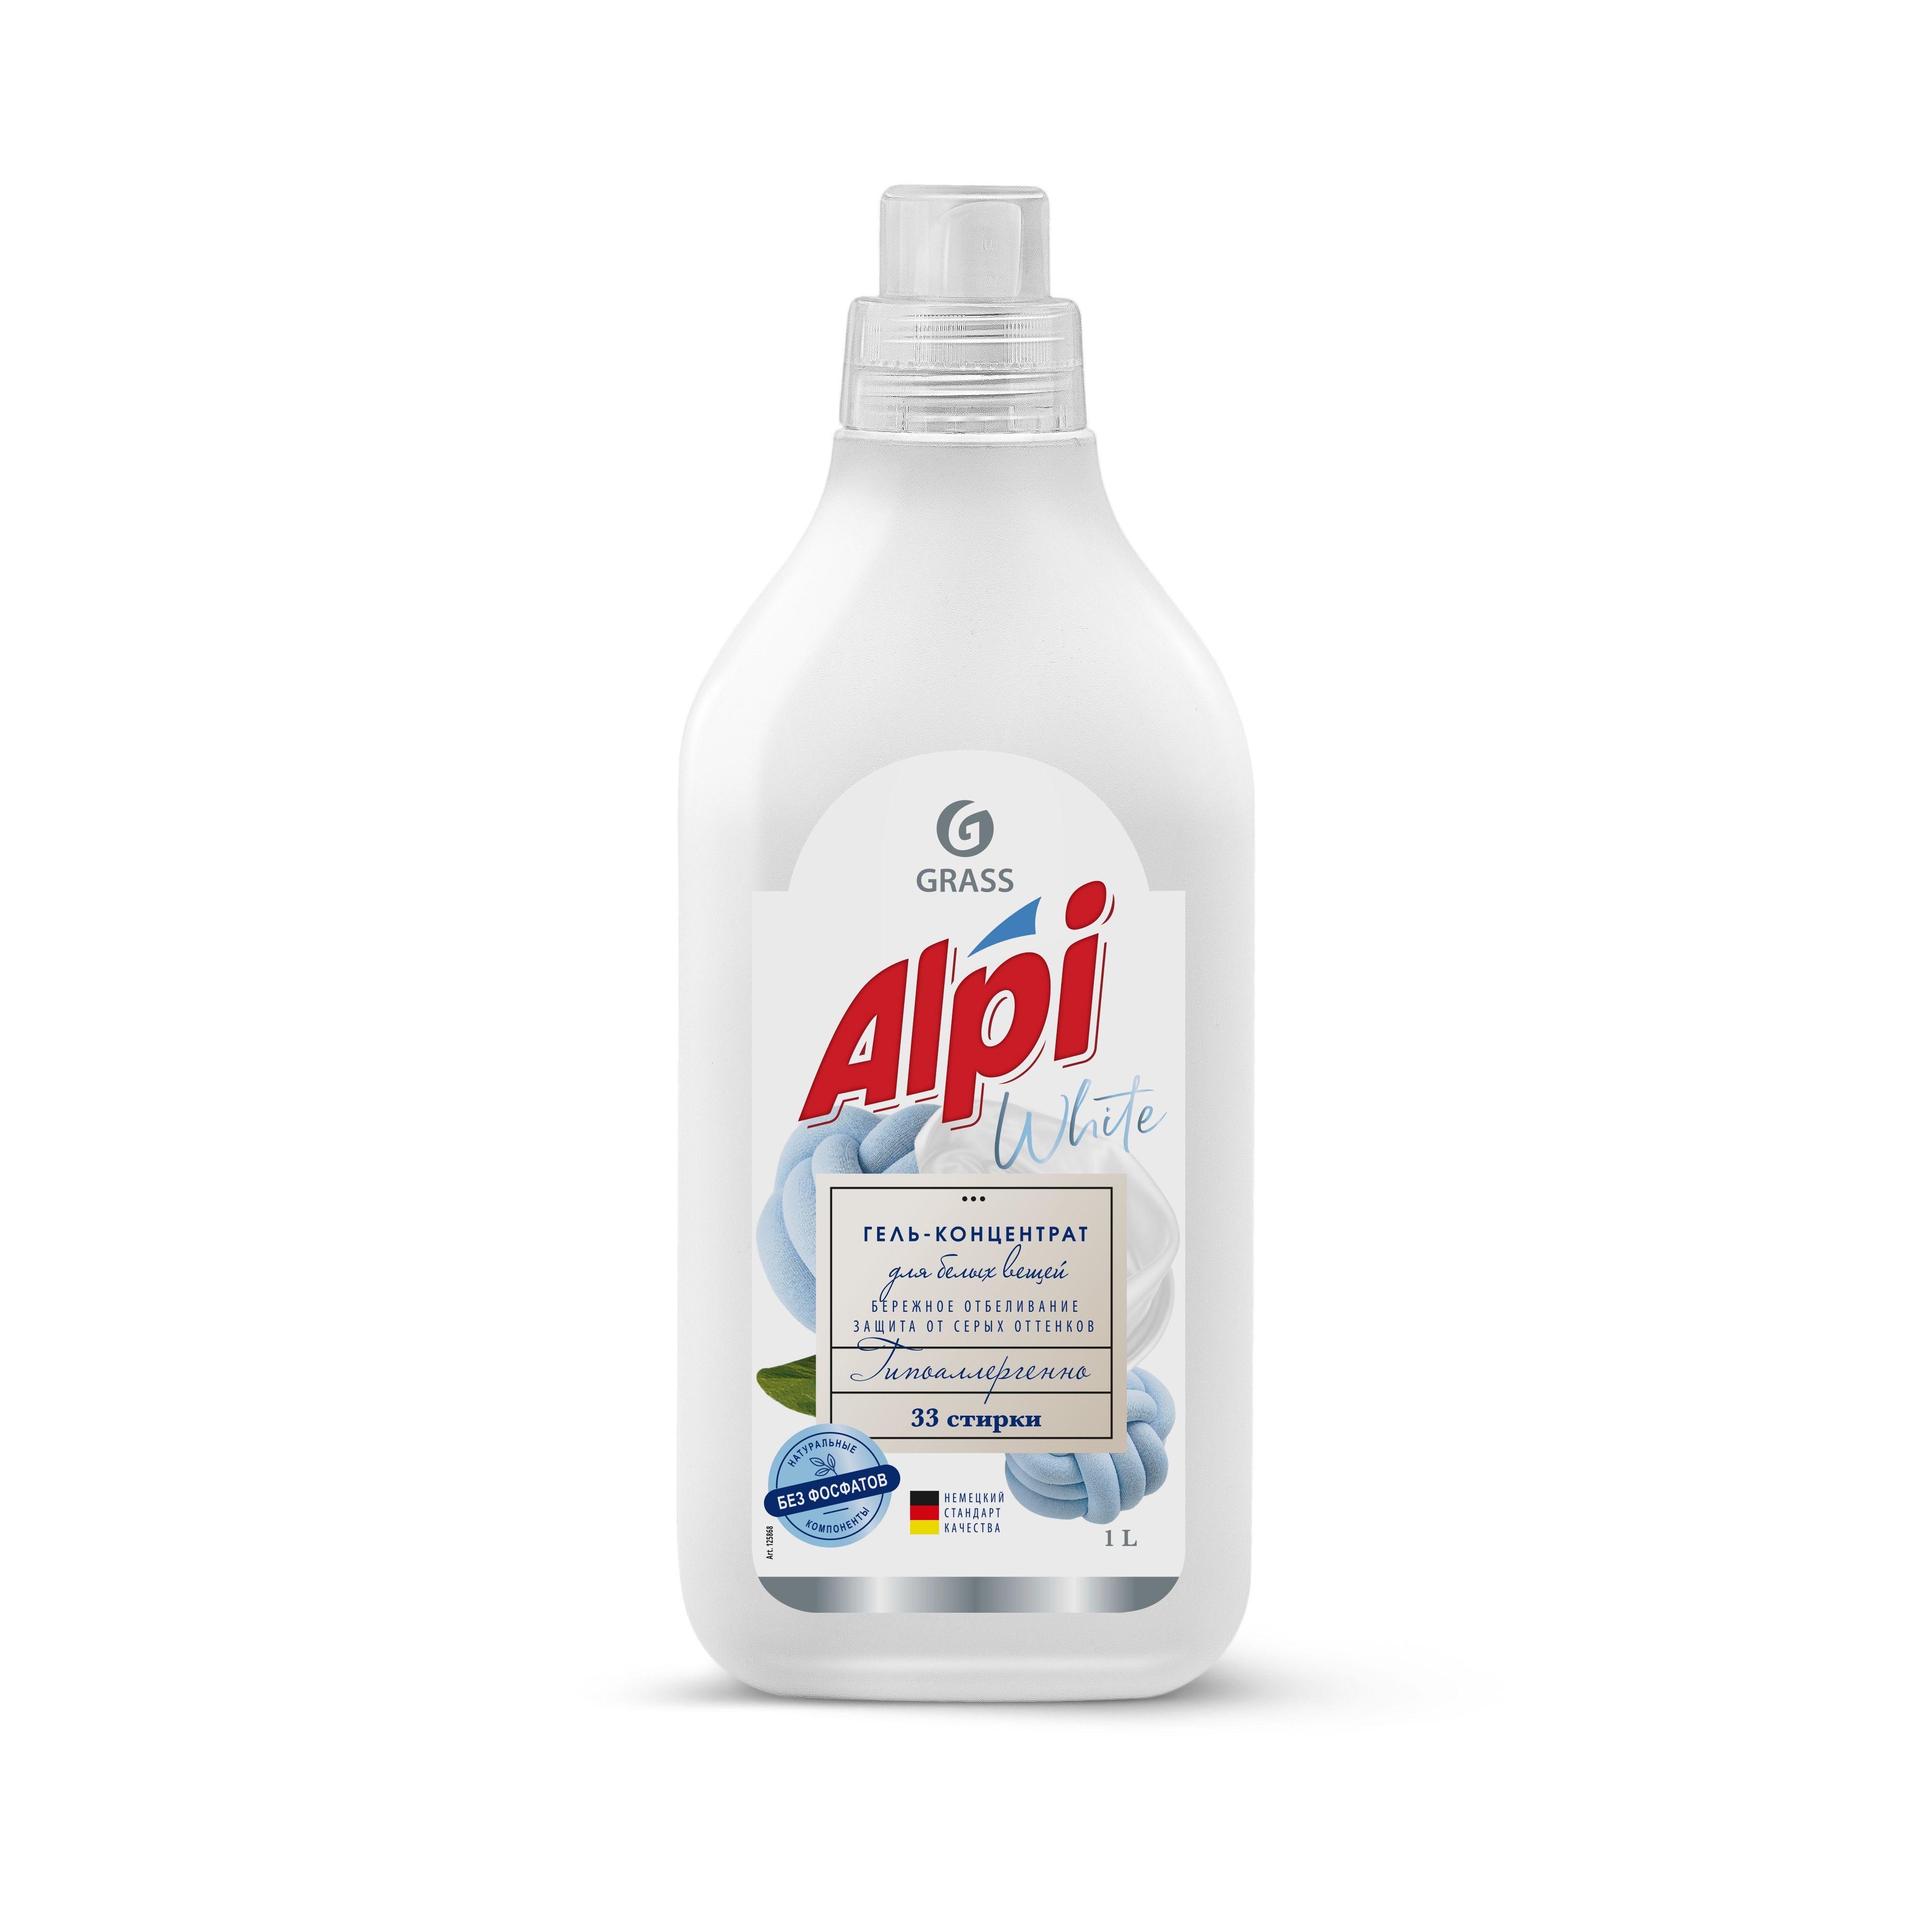 Жидкое средство для стирки Grass Alpi white gel концентрированное 1 л., ПЭТ